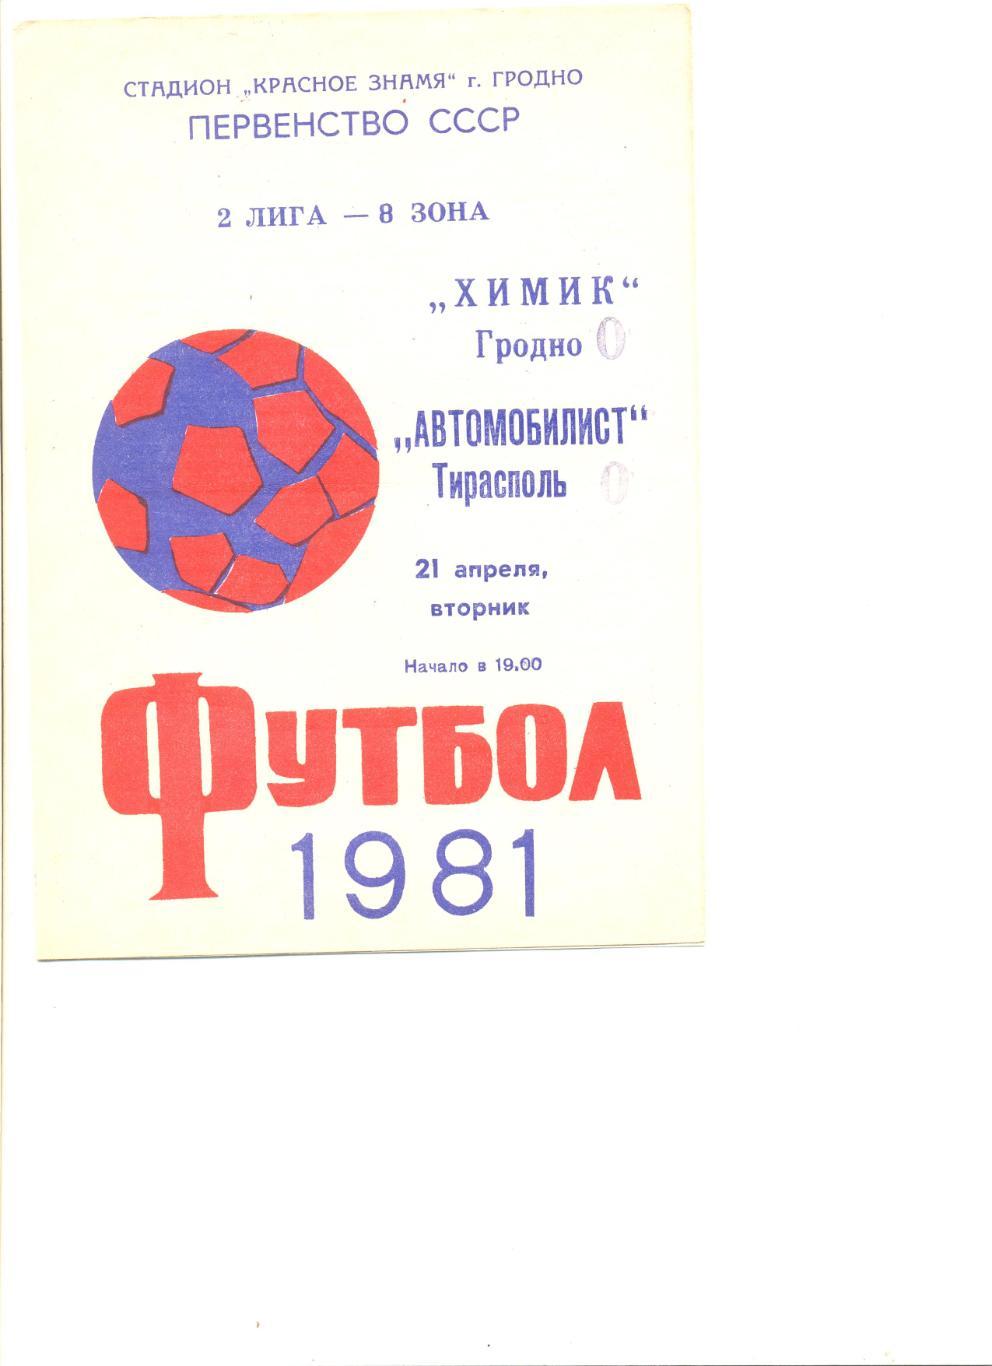 Химик Гродно - Автомобилист Тирасполь 21.04.1981 г.